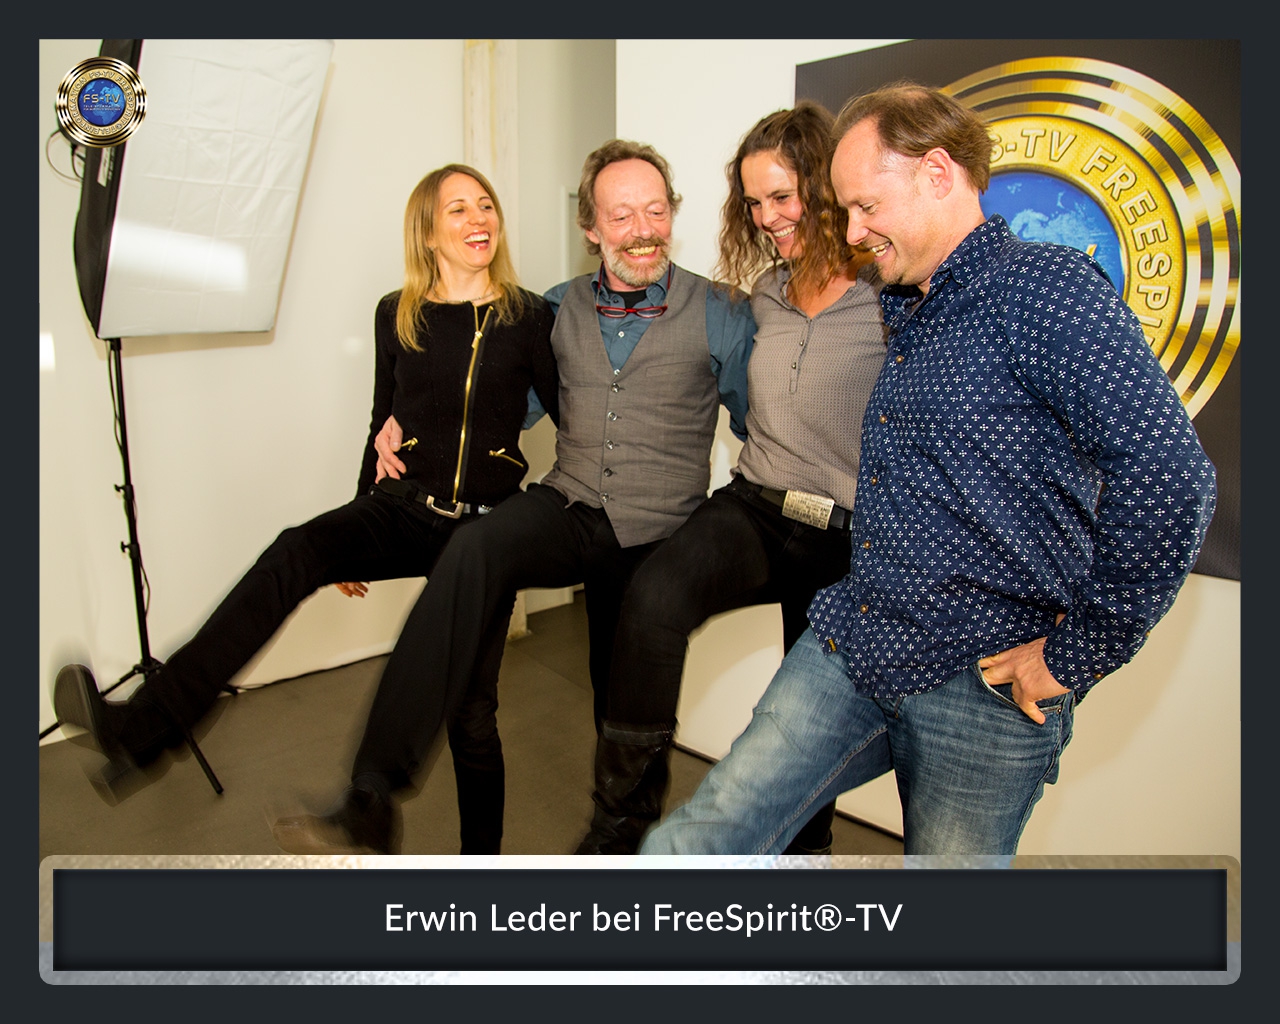 FS-TV-Bildergallerie-Erwin-Leder2